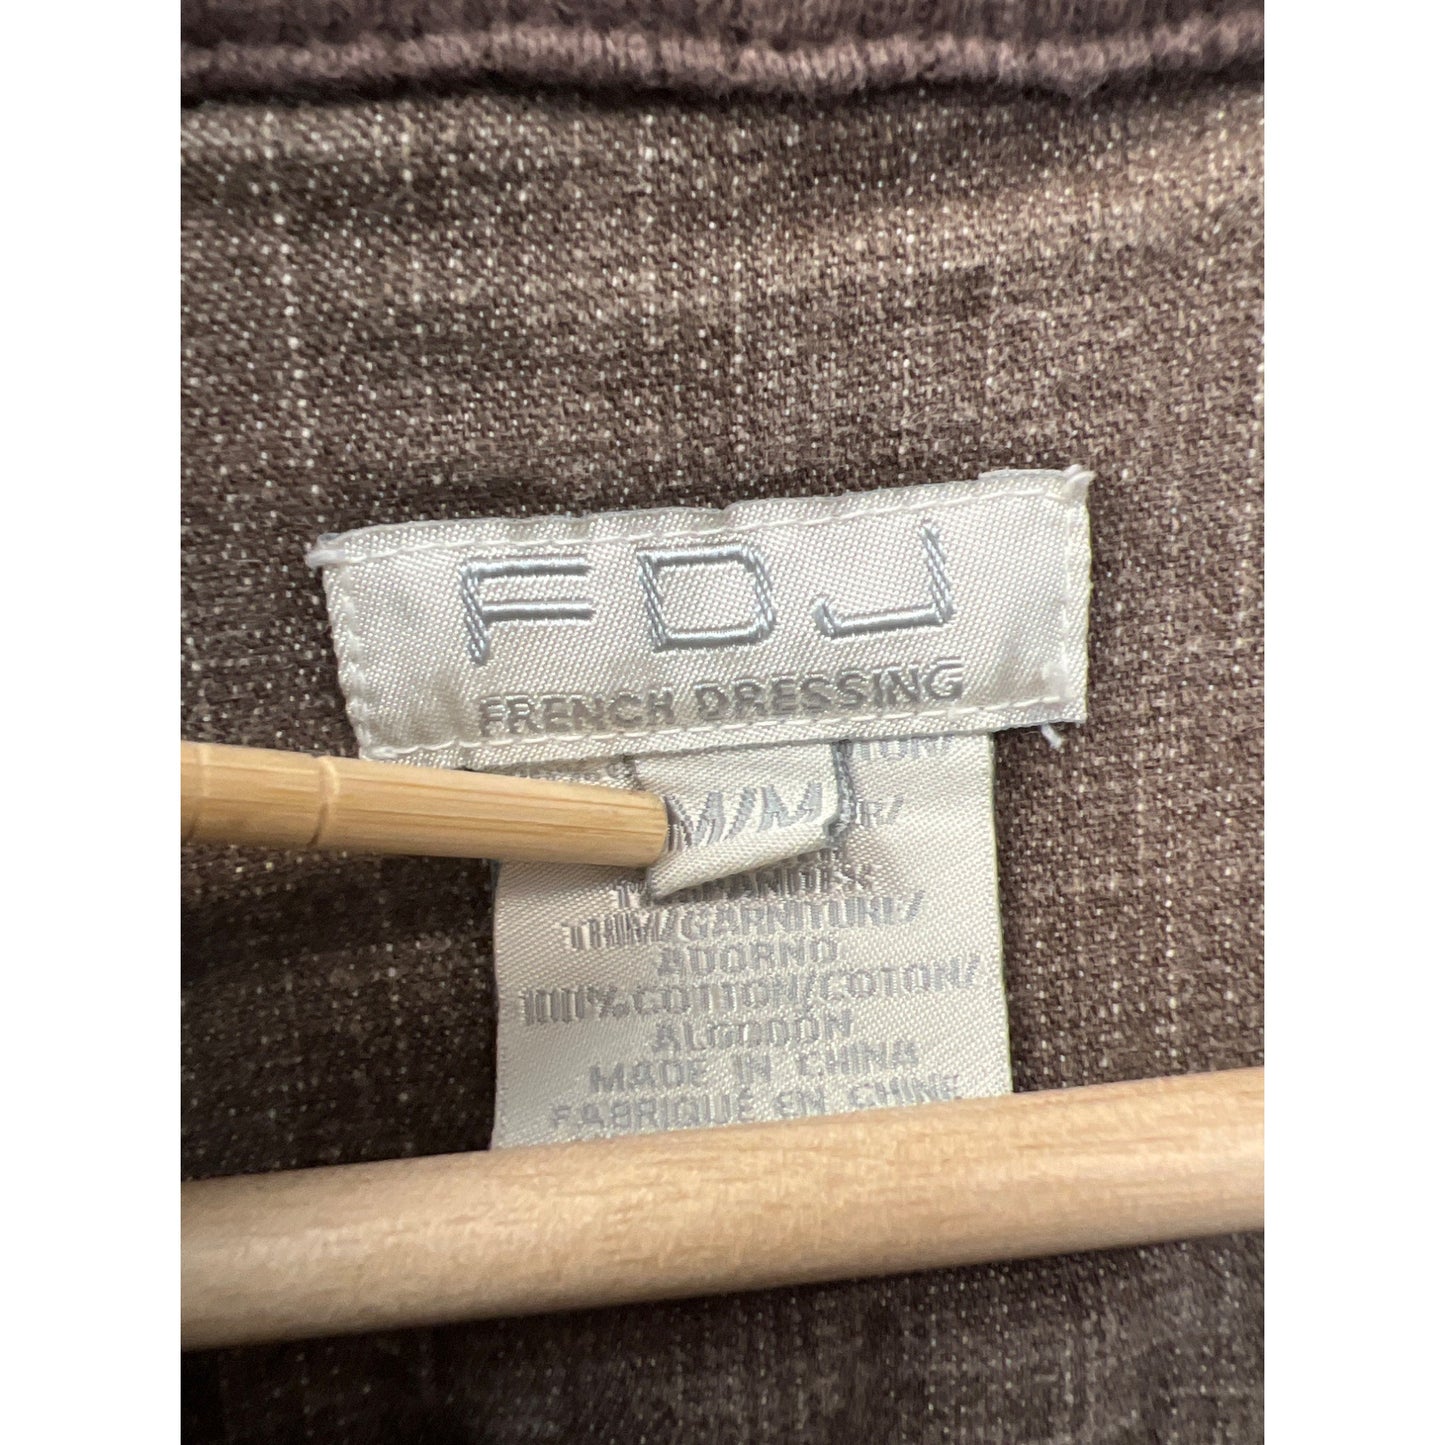 FDJ Vintage 90's Brown Denim Jacket and Jeans Set